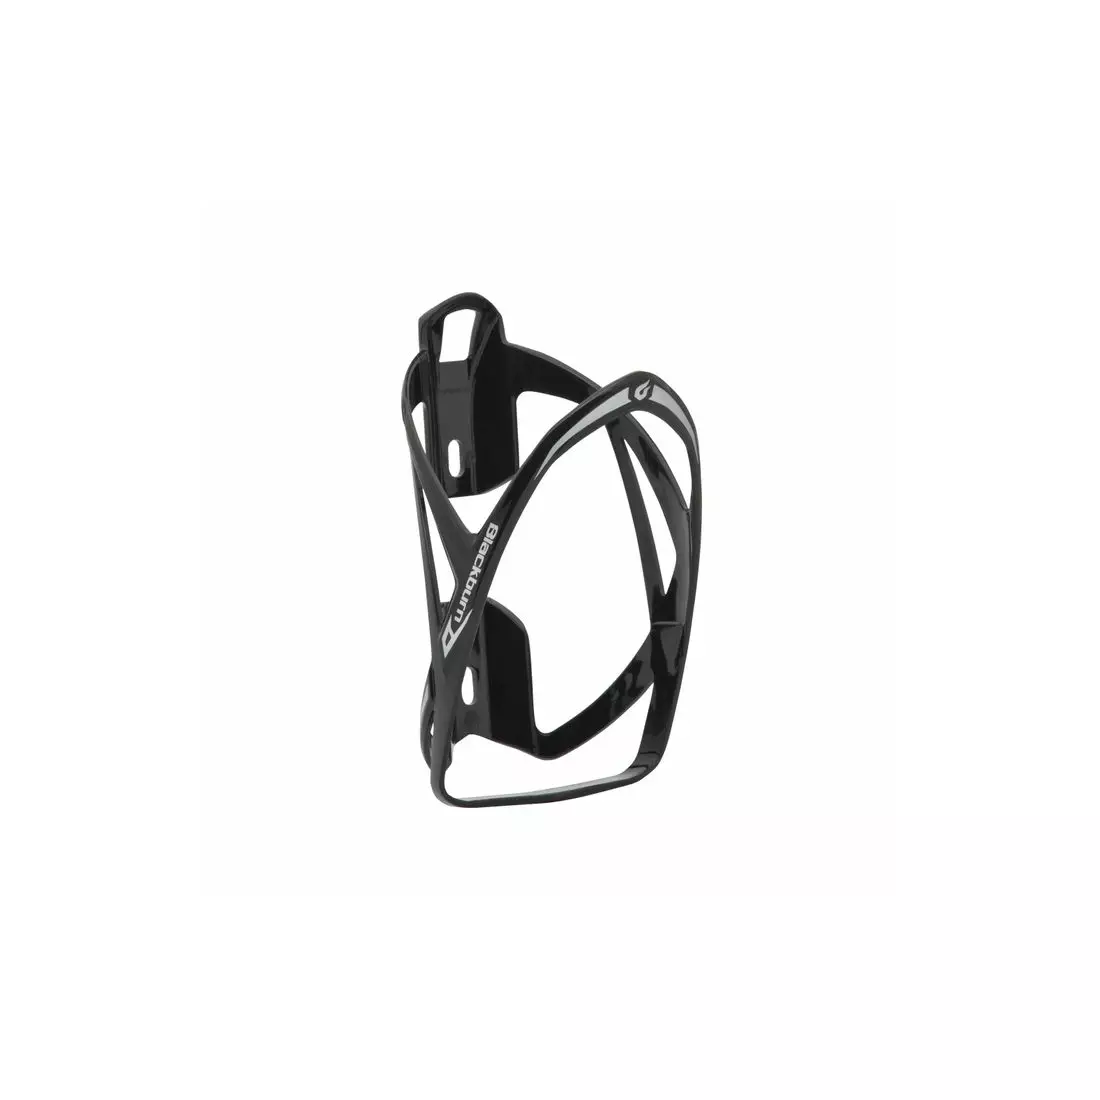 BLACKBURN Koszyk na bidon rowerowy SLICK 23g - plastik, czarny połysk